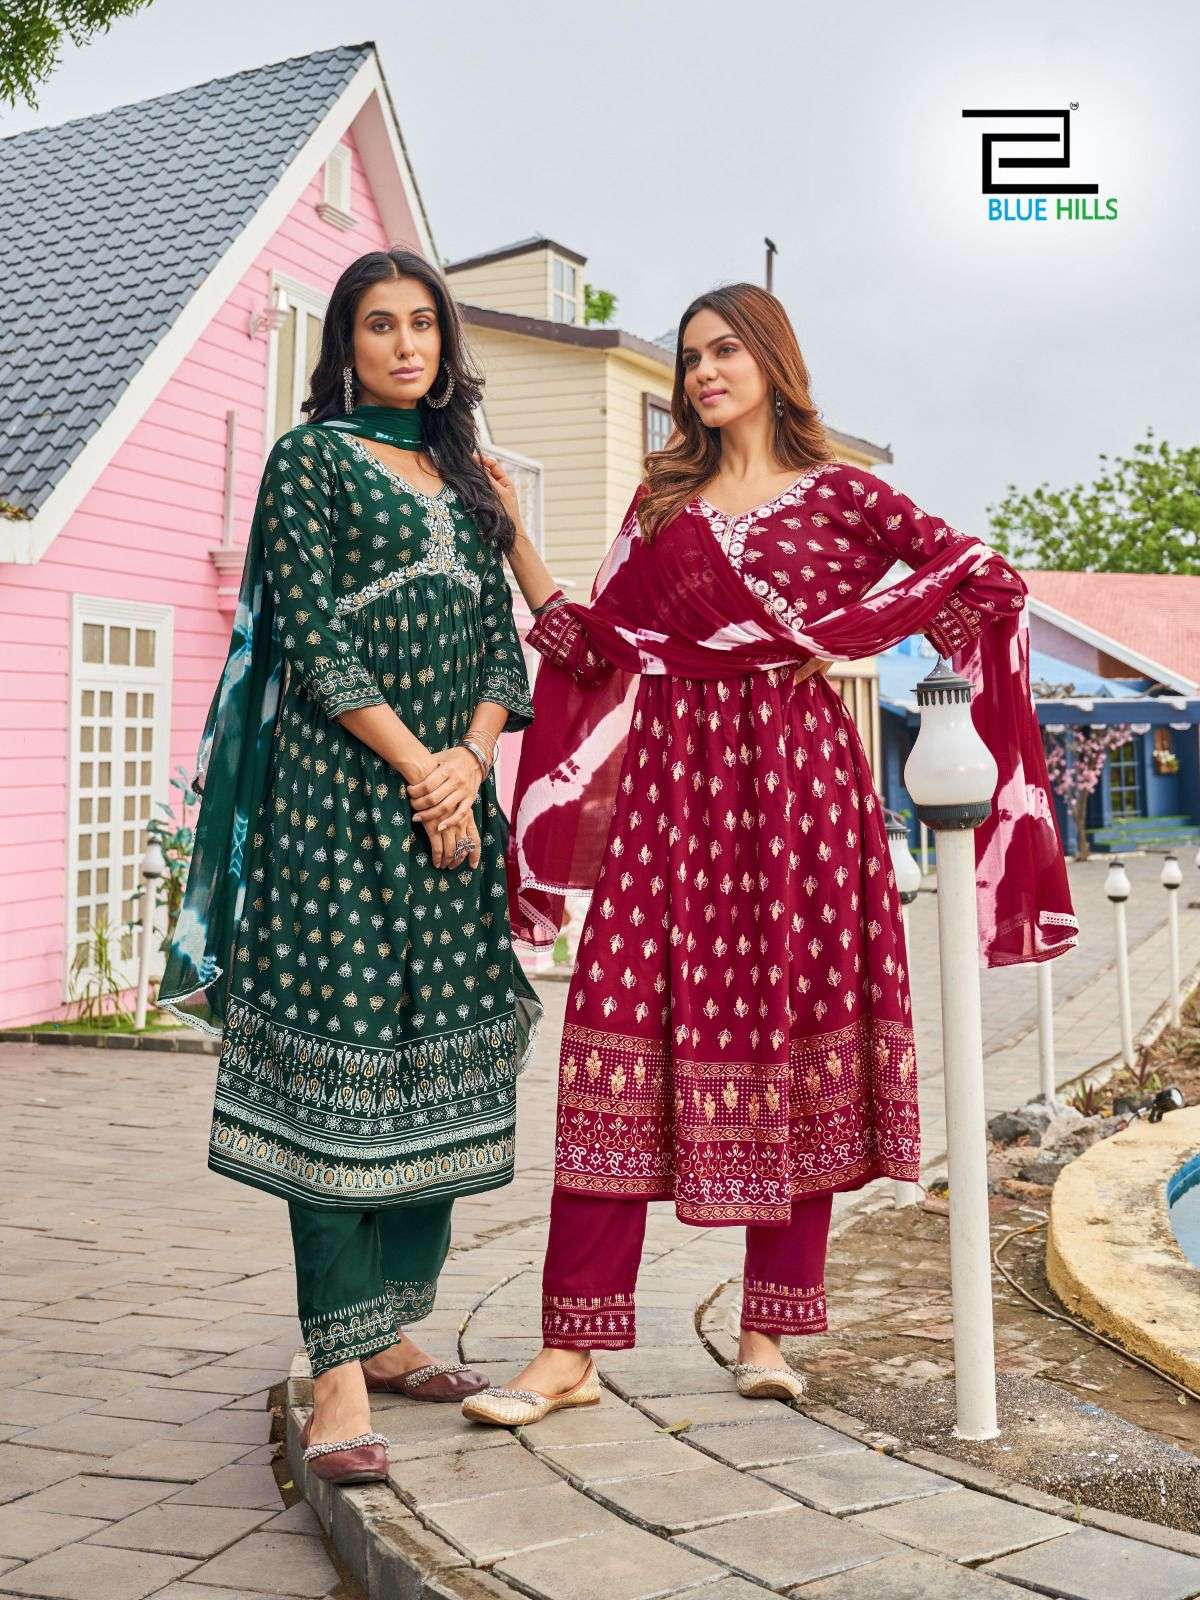 H Dot Hirwa Aaira Latest Style Fancy Aliya Cut Kurti Wholesaler